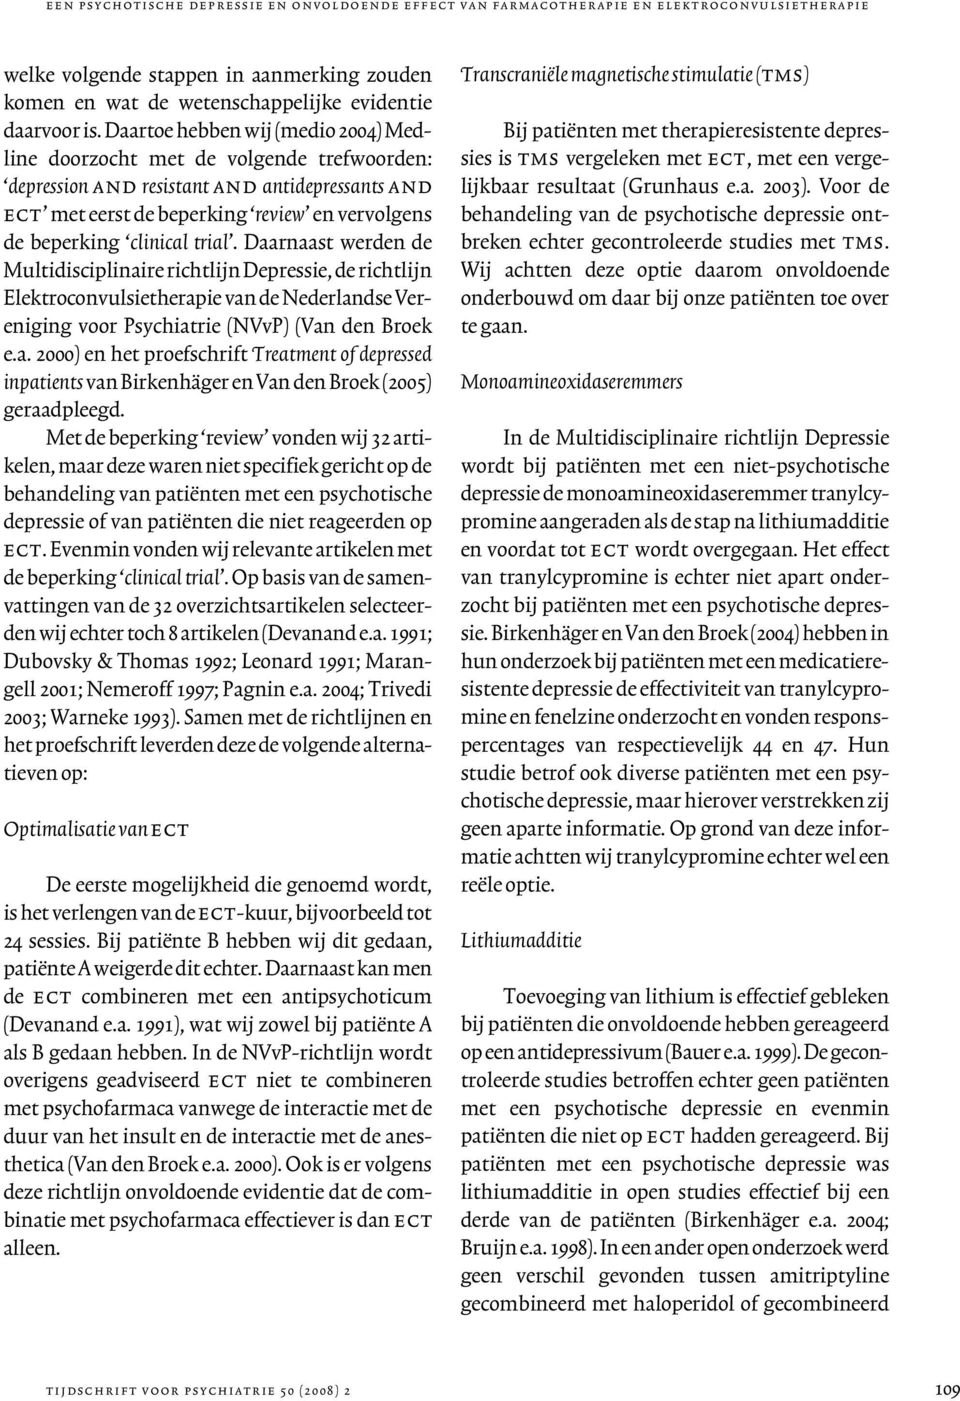 trial. Daarnaast werden de Multidisciplinaire richtlijn Depressie, de richtlijn Elektroconvulsietherapie van de Nederlandse Vereniging voor Psychiatrie (NVvP) (Van den Broek e.a. 2000) en het proefschrift Treatment of depressed inpatients van Birkenhäger en Van den Broek (2005) geraadpleegd.